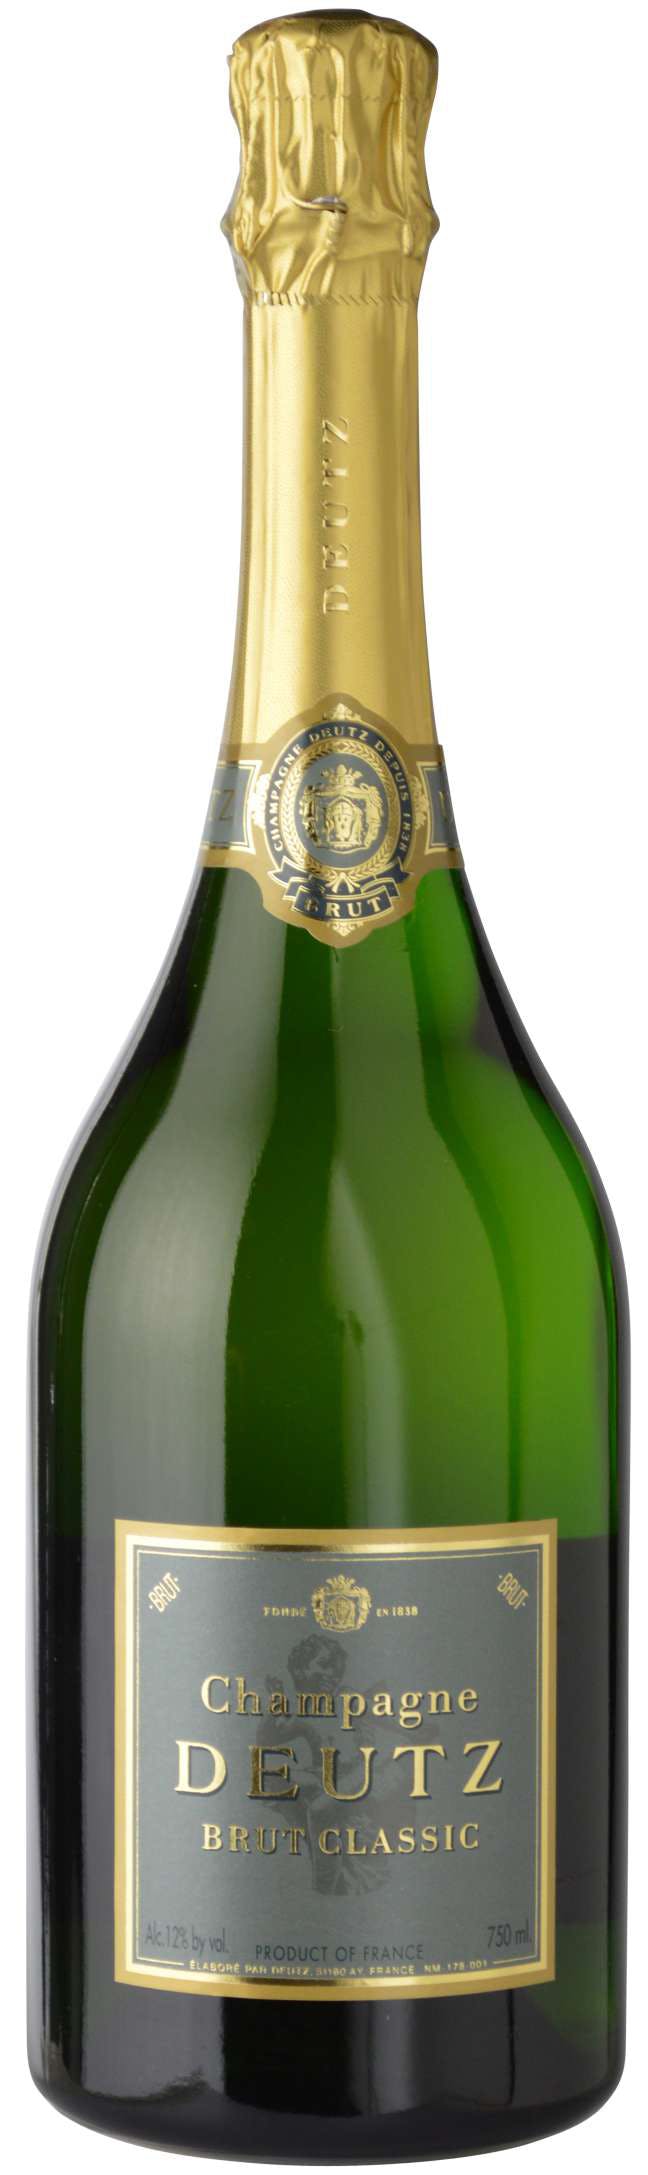 Champagne Deutz Brut Classic - Réserve de Bacchus